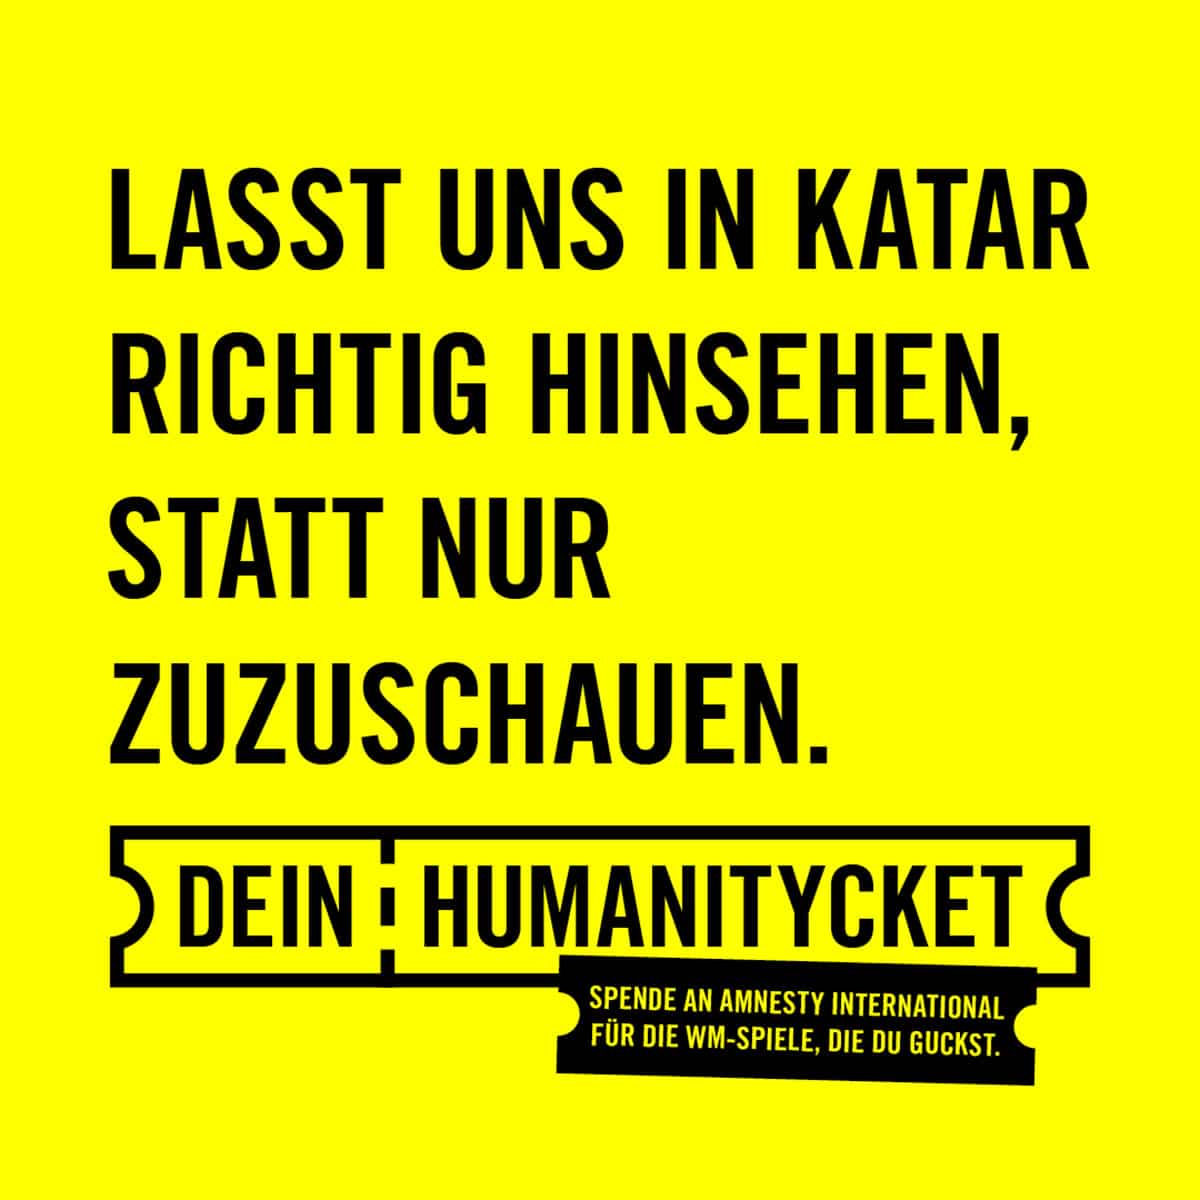 Im leuchtenden gelb der Amnesty International Organisation mit schwarzer Typo steht: Lasst uns in Katar richtig hinsehen, statt nur zuzuschauen